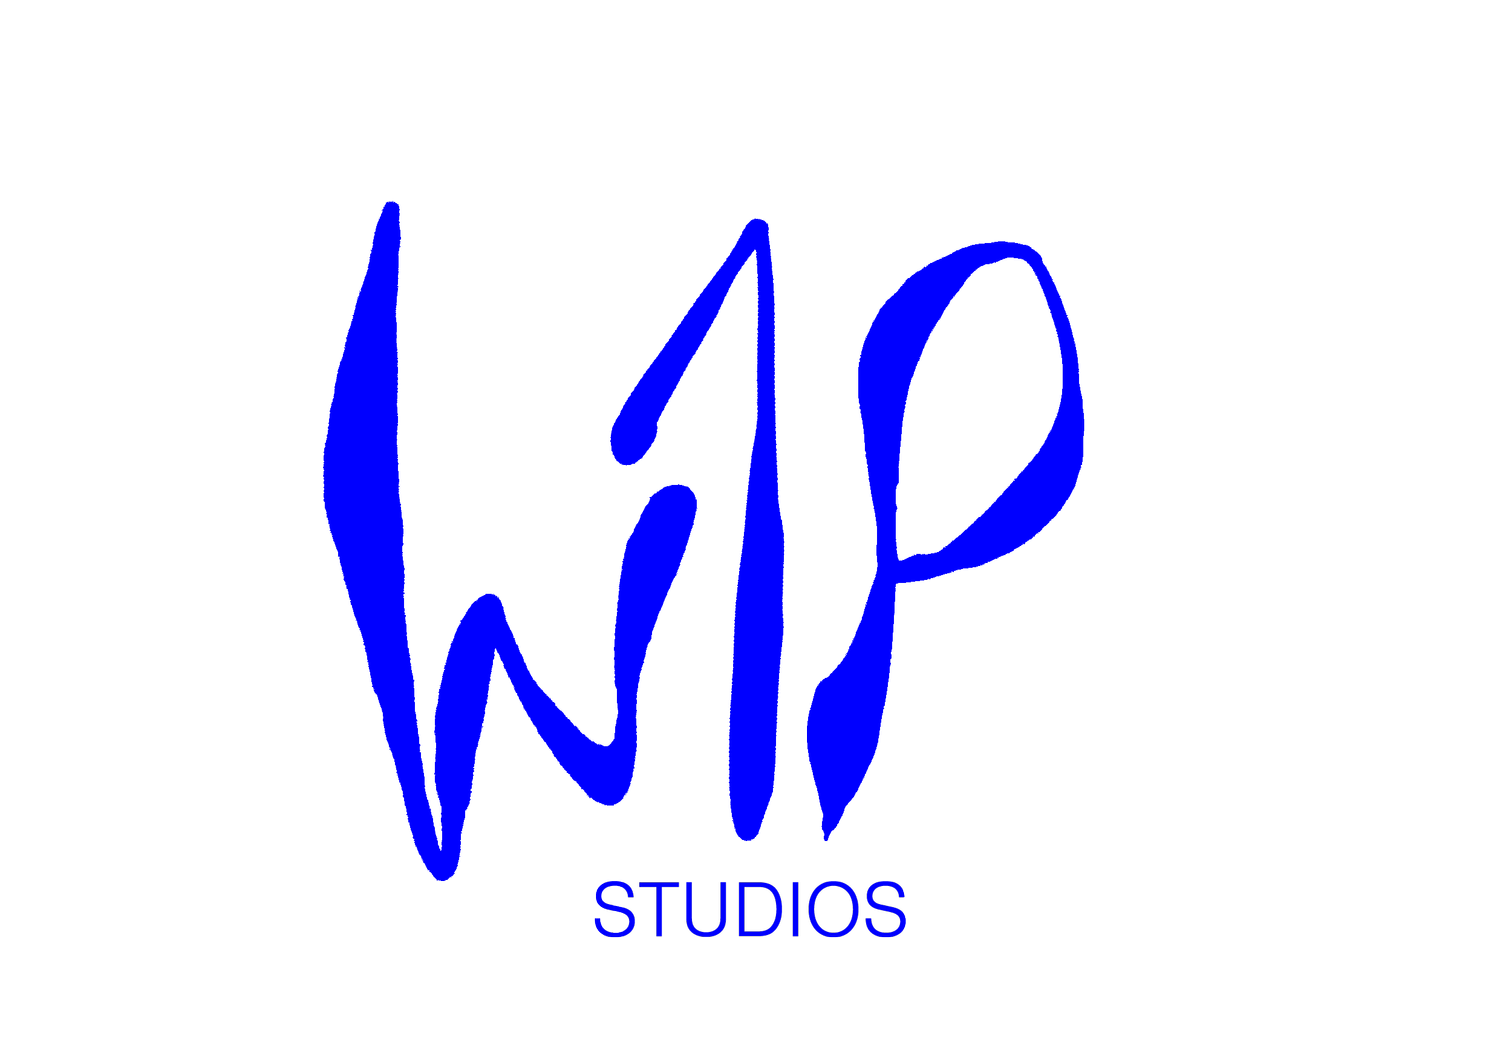 W1P STUDIOS